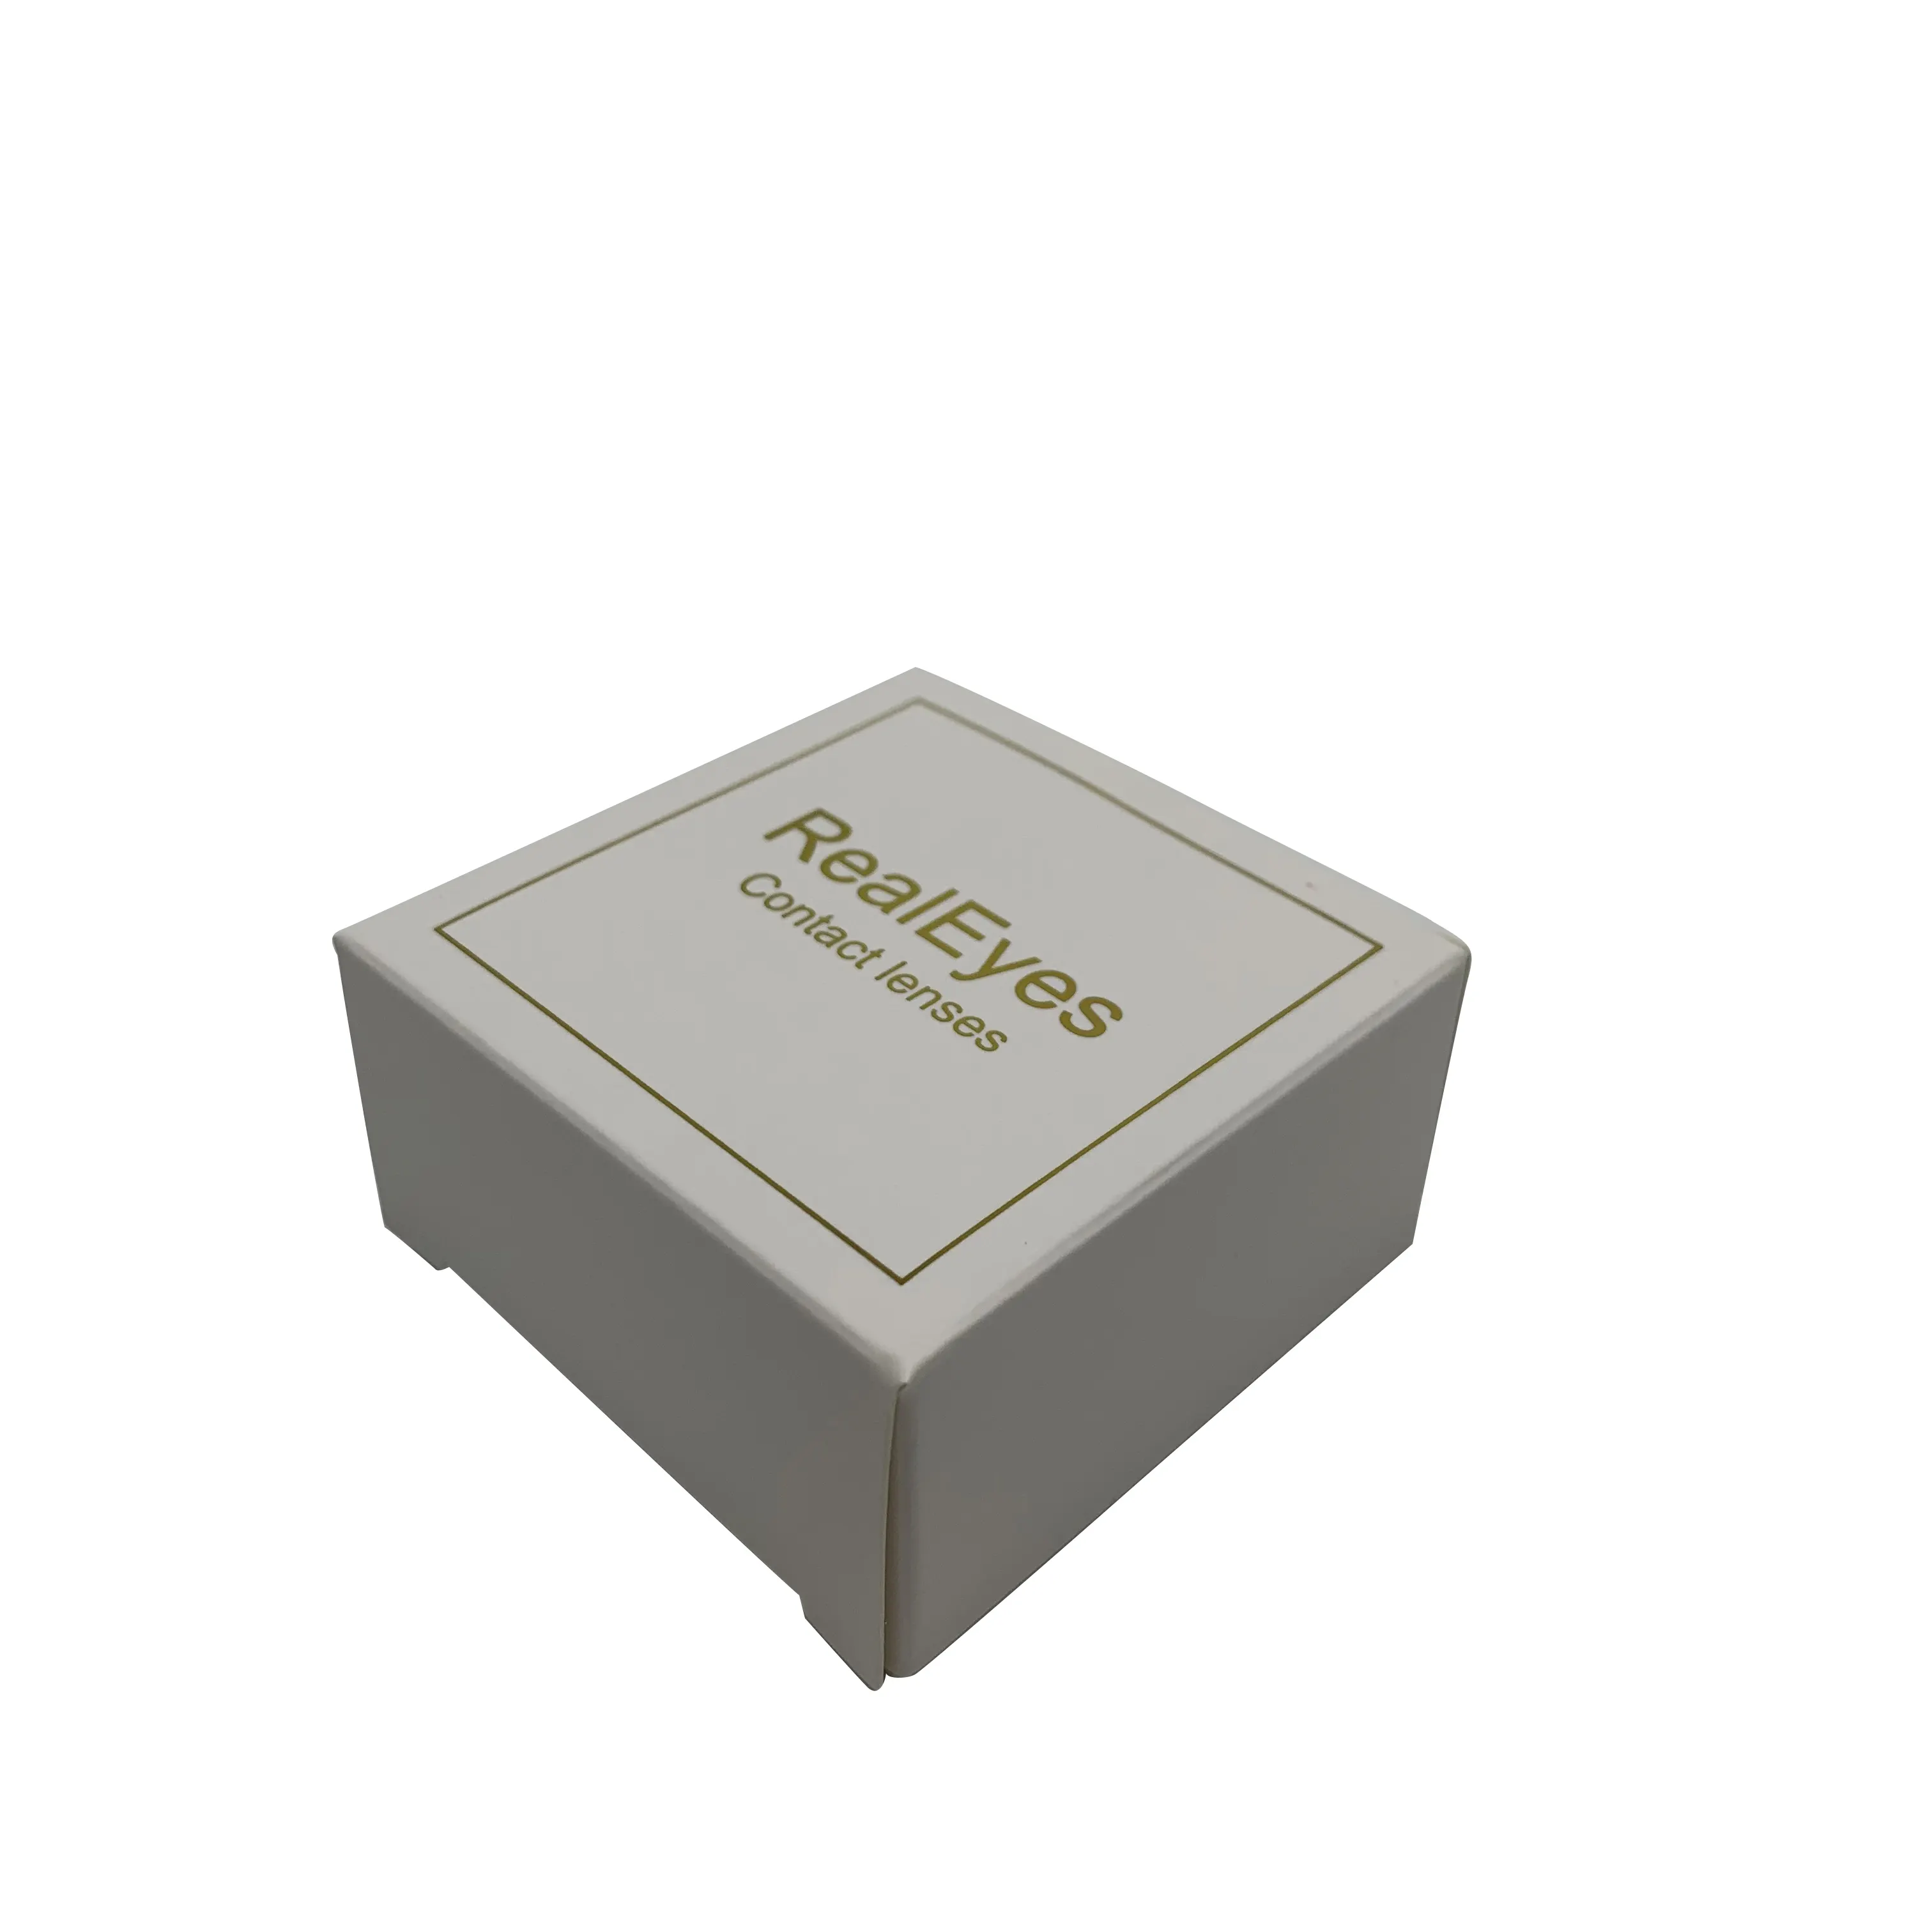 Kotak kemasan lensa kontak kertas desain lucu kustom dengan logo cap emas